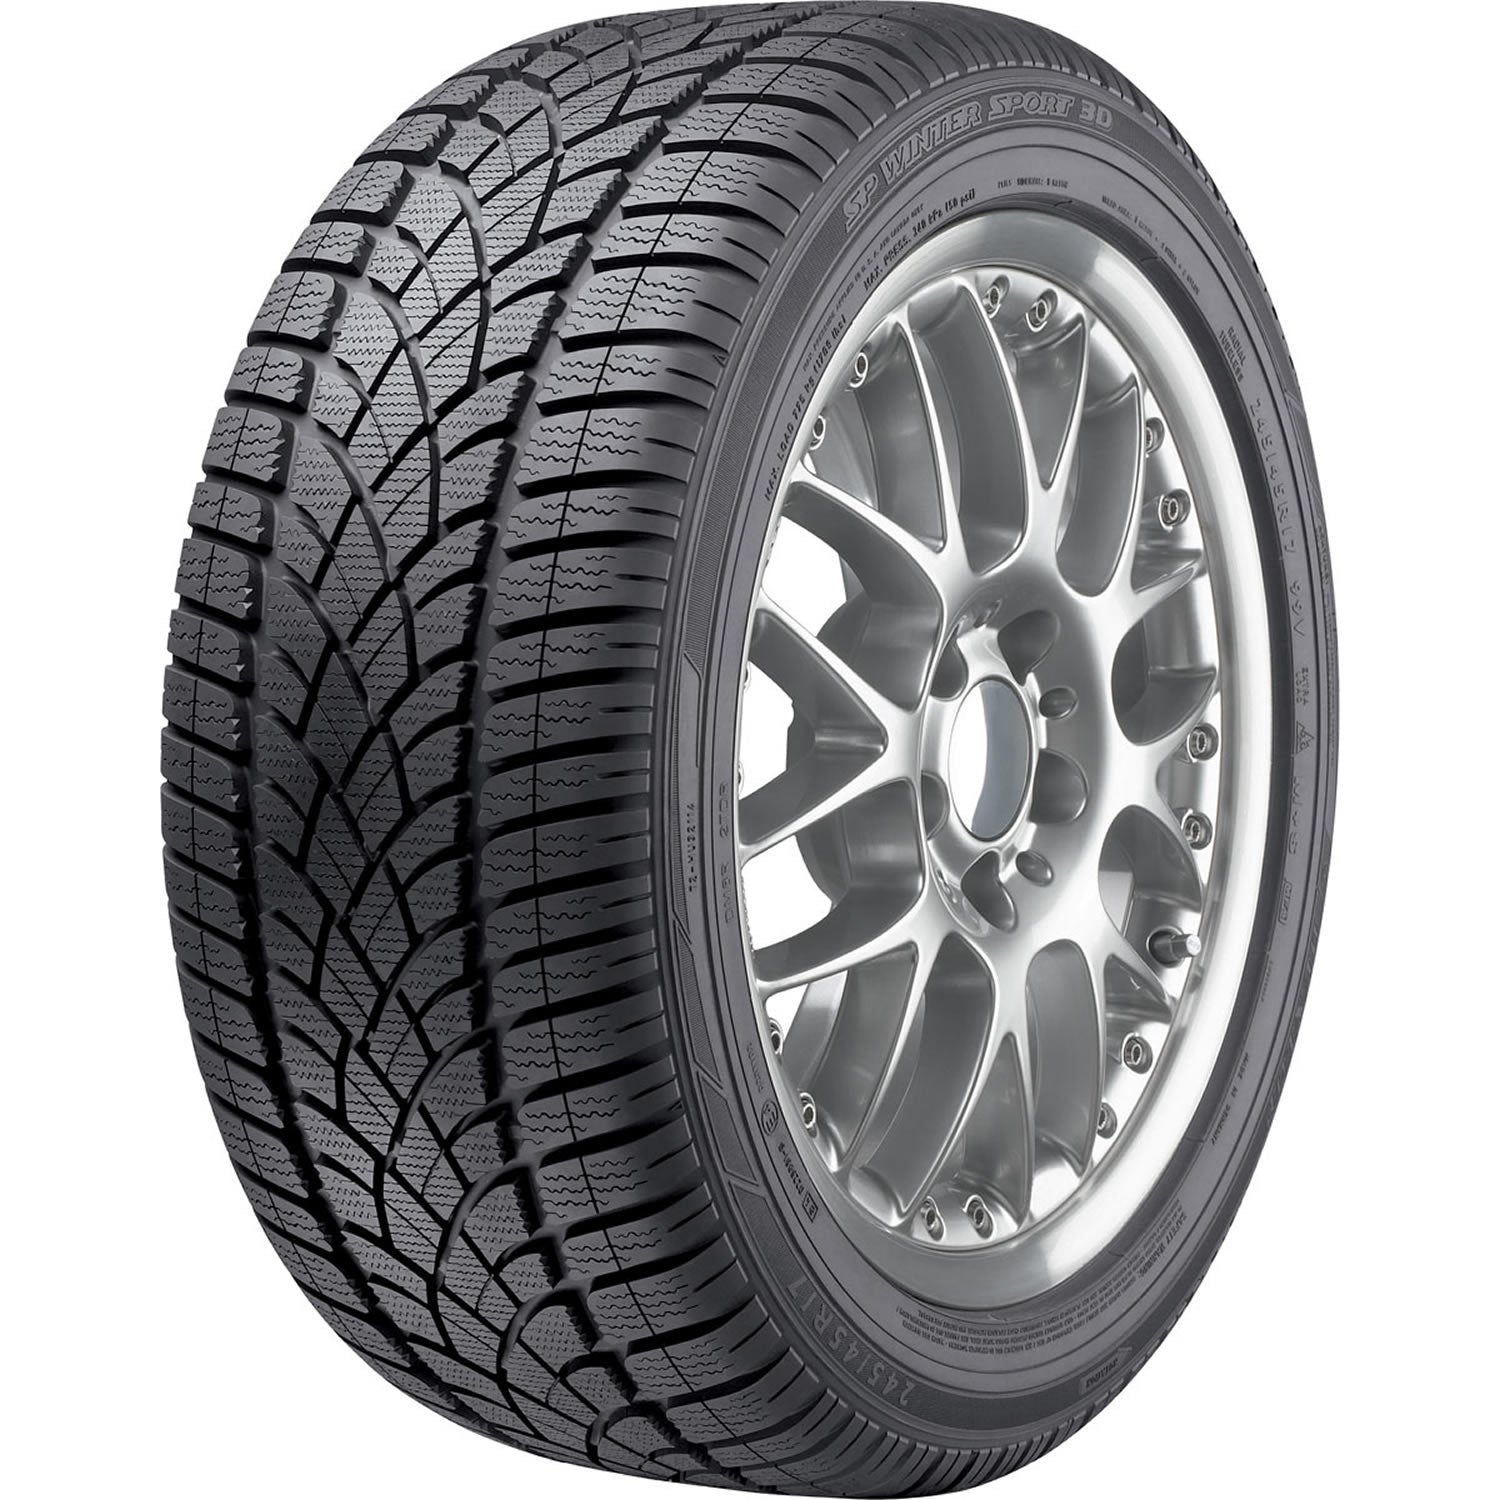 DUNLOP SP WINTER SPORT 3D ROF 245/45R18 (26.7X9.6R 18) Tires